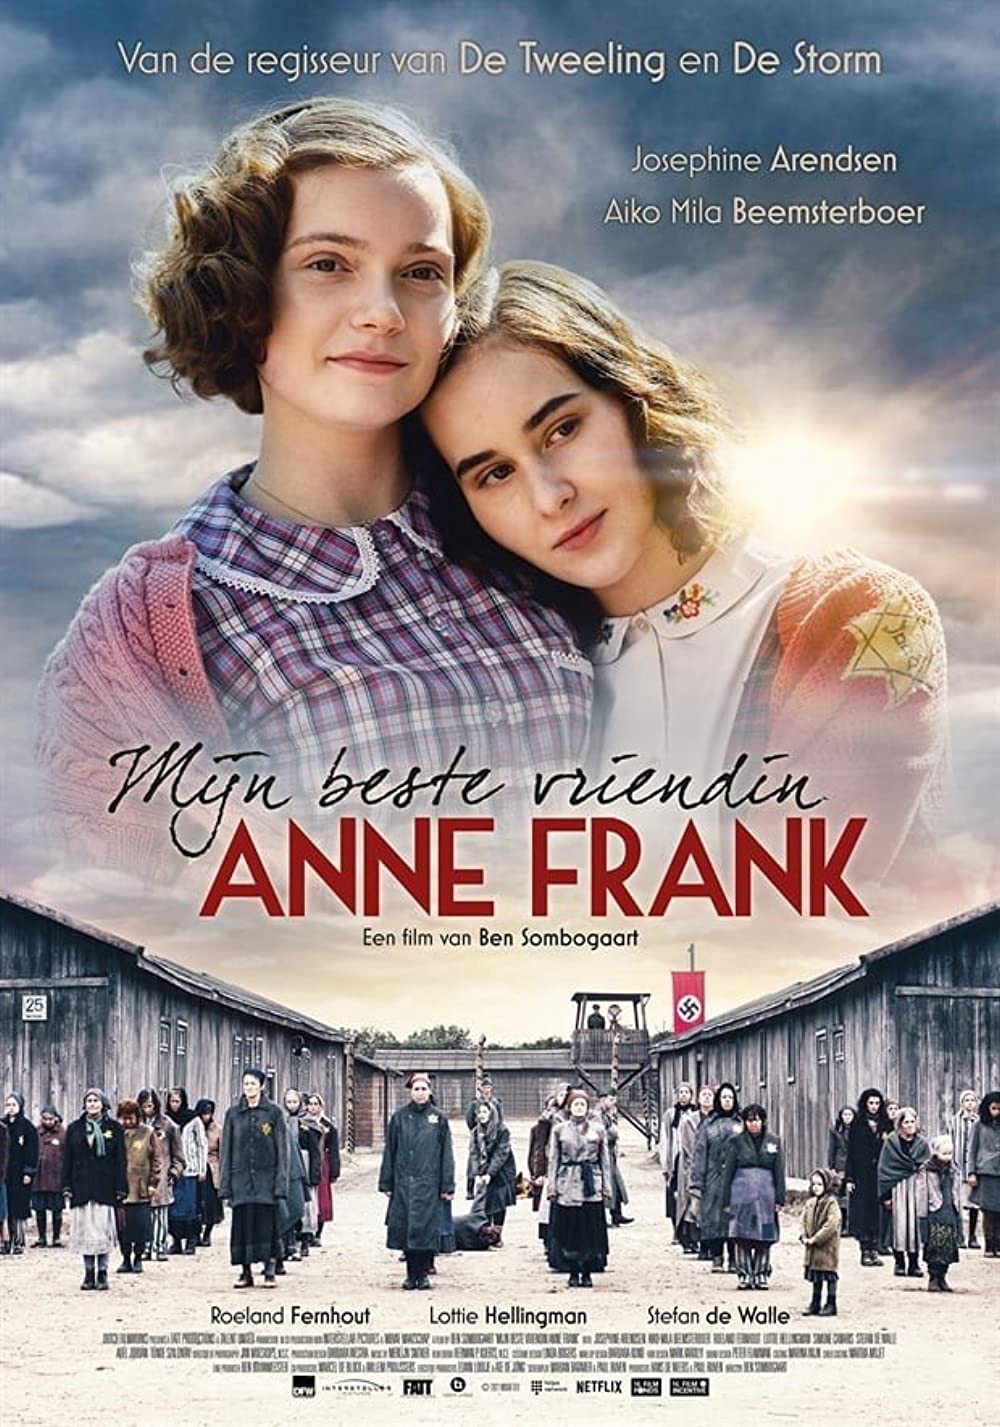 Anne Frank, người bạn yêu quý của tôi - Anne Frank, người bạn yêu quý của tôi